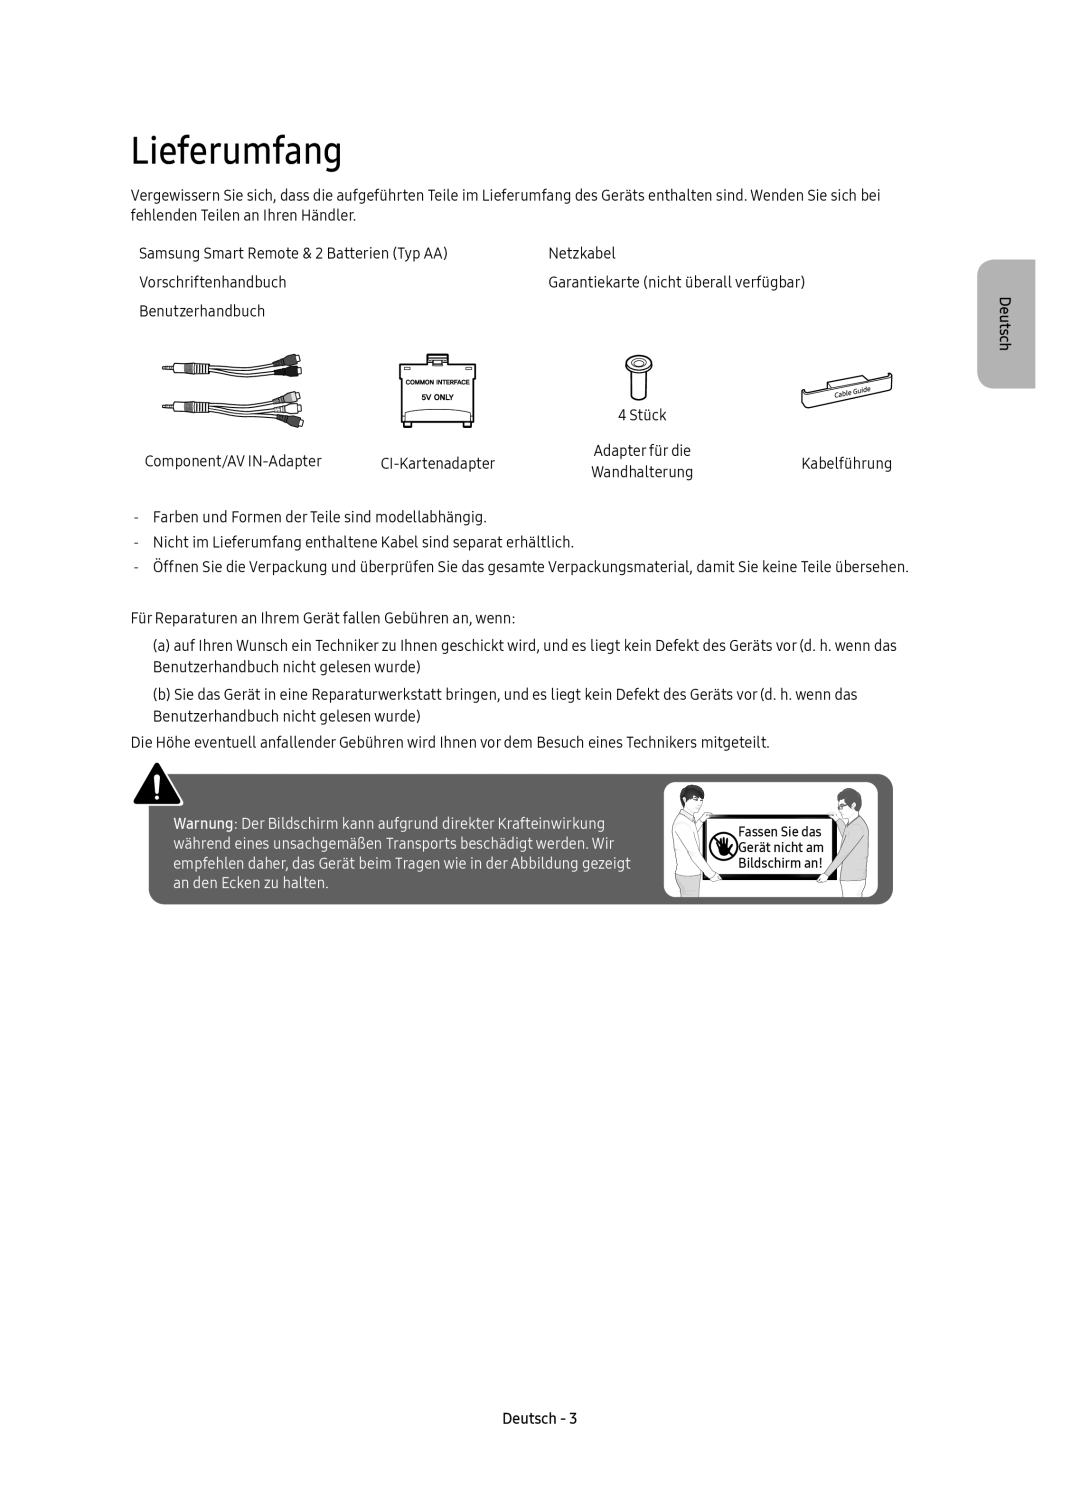 Samsung UE49K6370SUXZF Lieferumfang, Warnung Der Bildschirm kann aufgrund direkter Krafteinwirkung, an den Ecken zu halten 